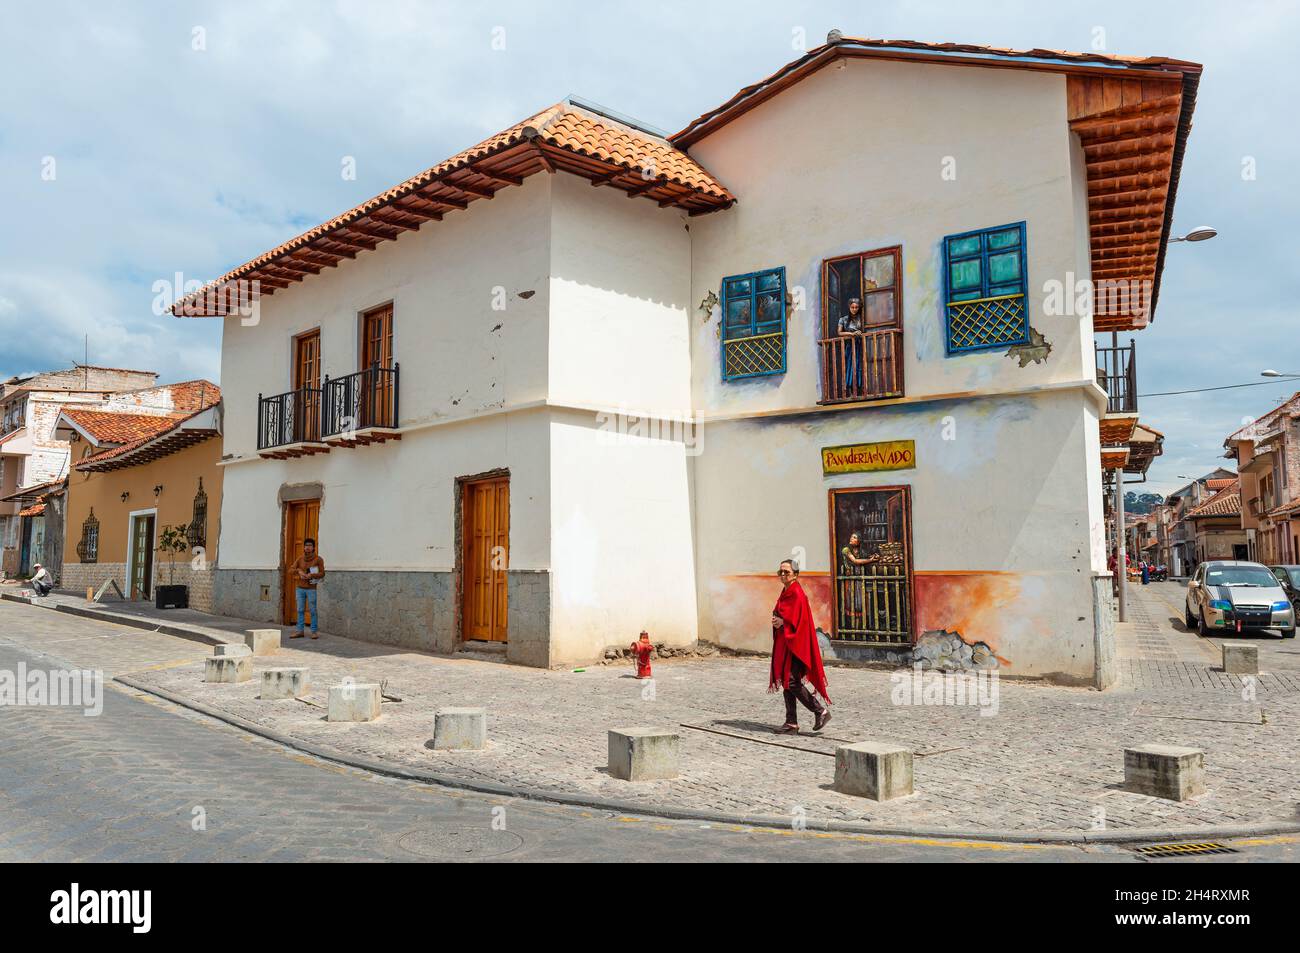 La vie urbaine avec le peuple équatorien et l'architecture de style colonial dans la ville de Cuenca, Equateur. Banque D'Images